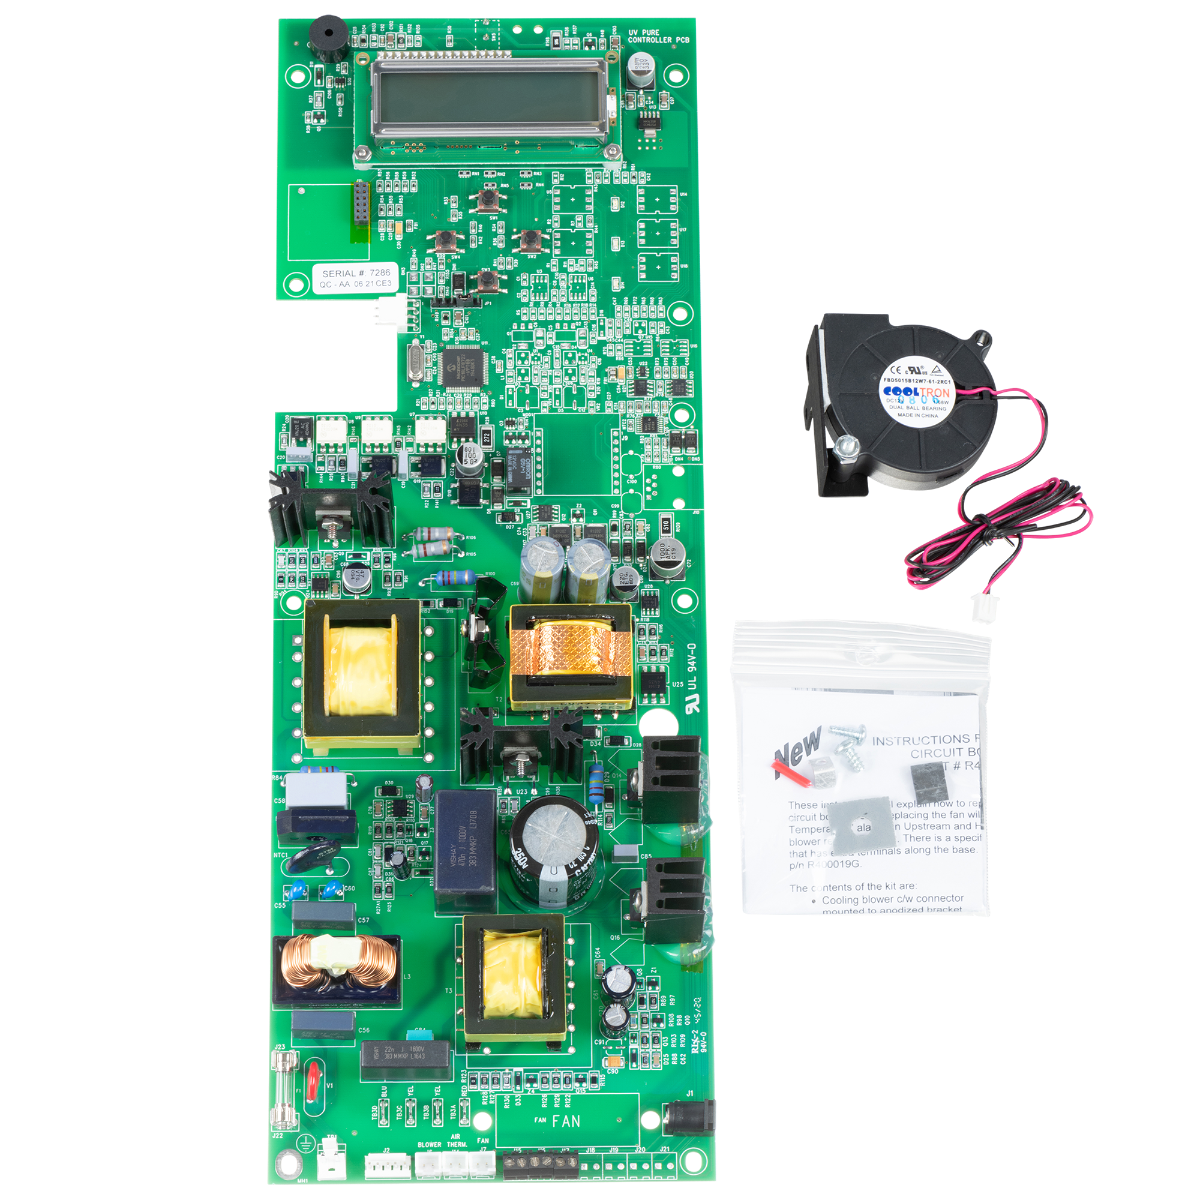 Circuit Board / Ballast Combination Beta Board – R400058